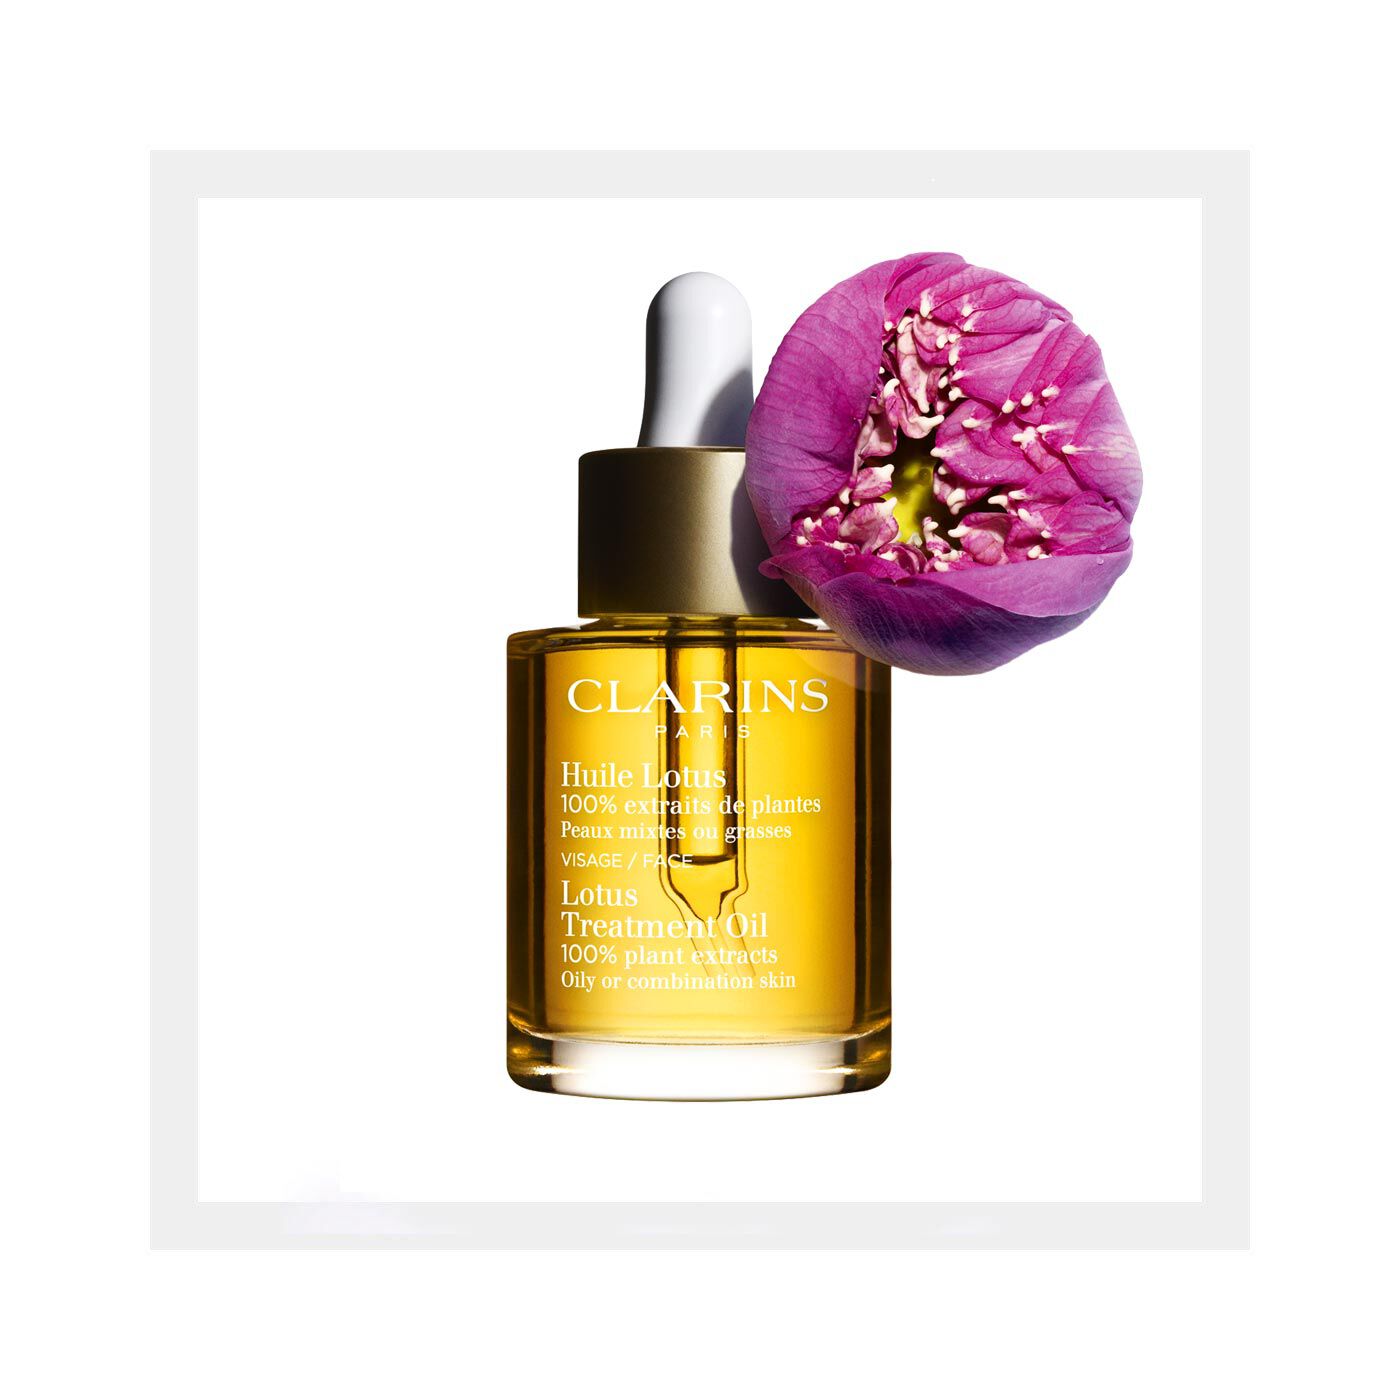 Gesichtspflege-Öl Lotus - Mischhaut/Ölige Haut